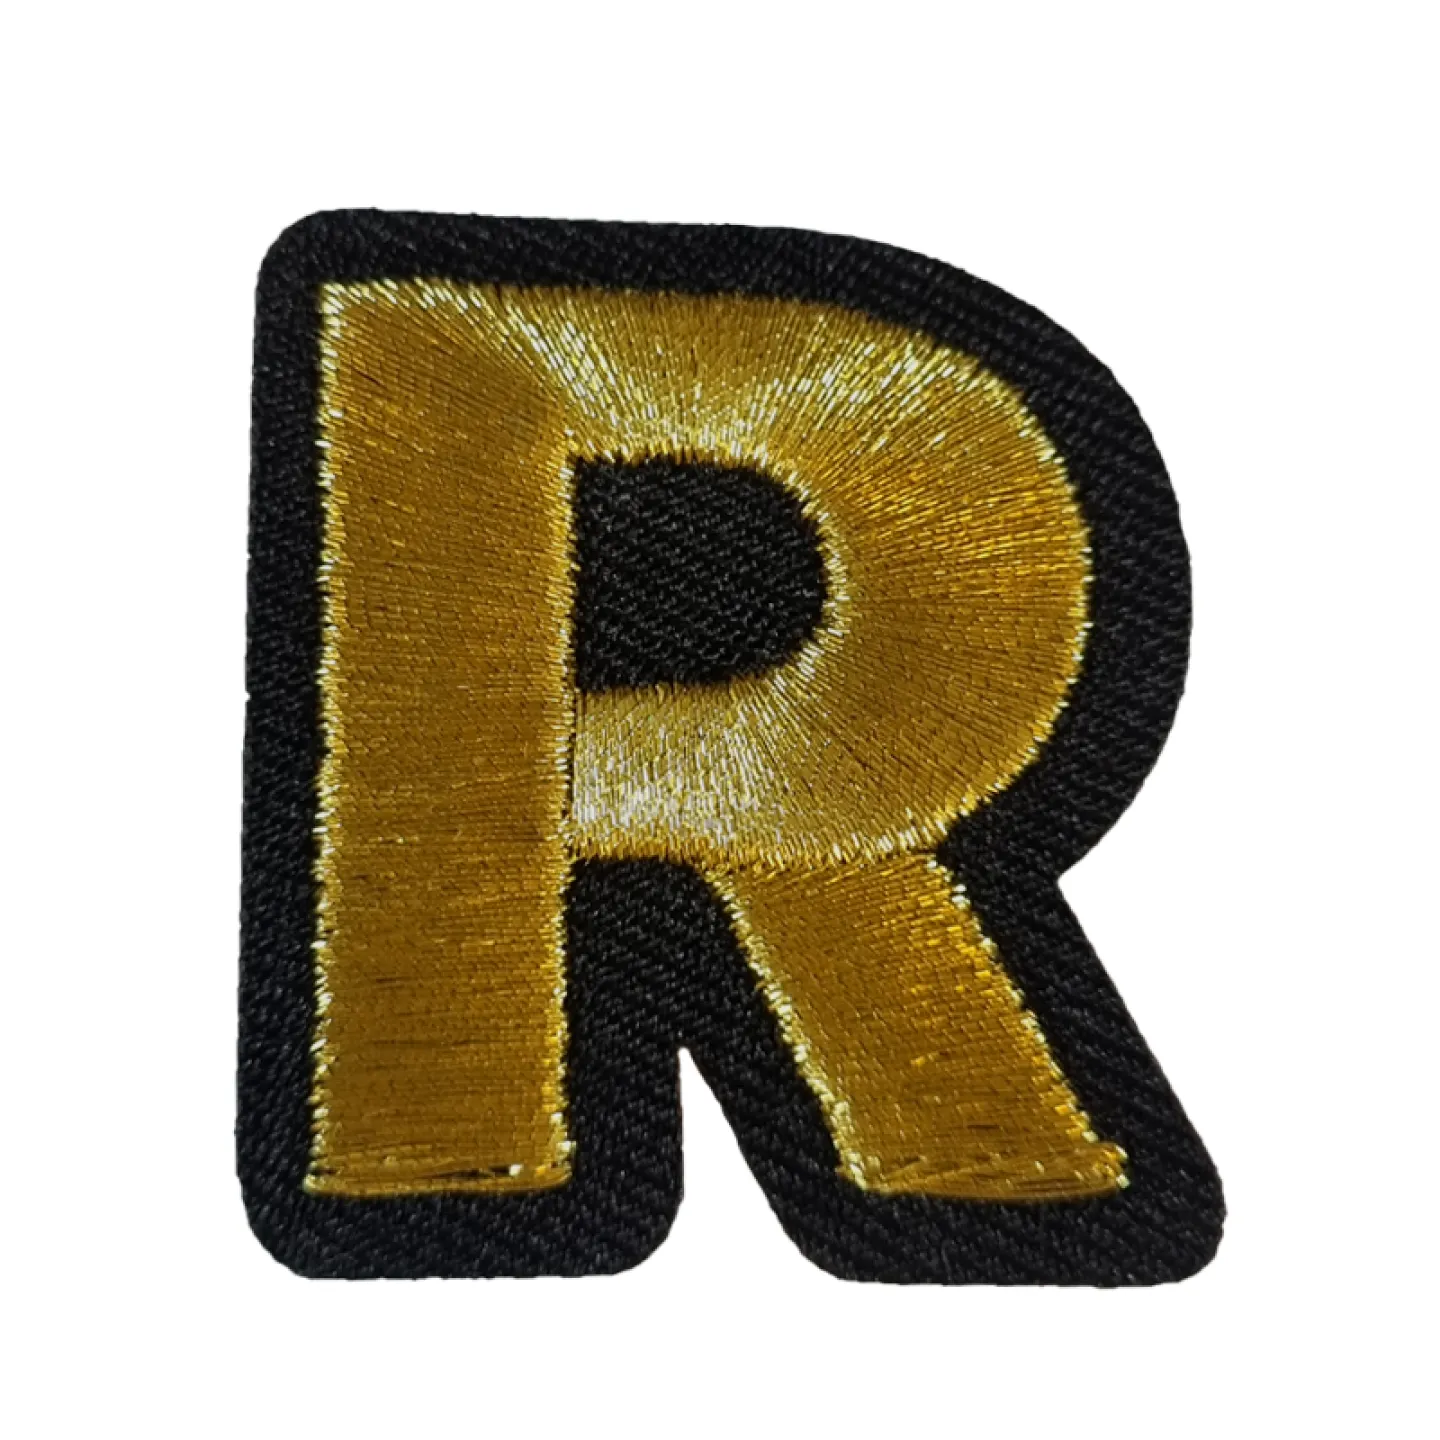 Oeteldonk embleem Gouden letter R.